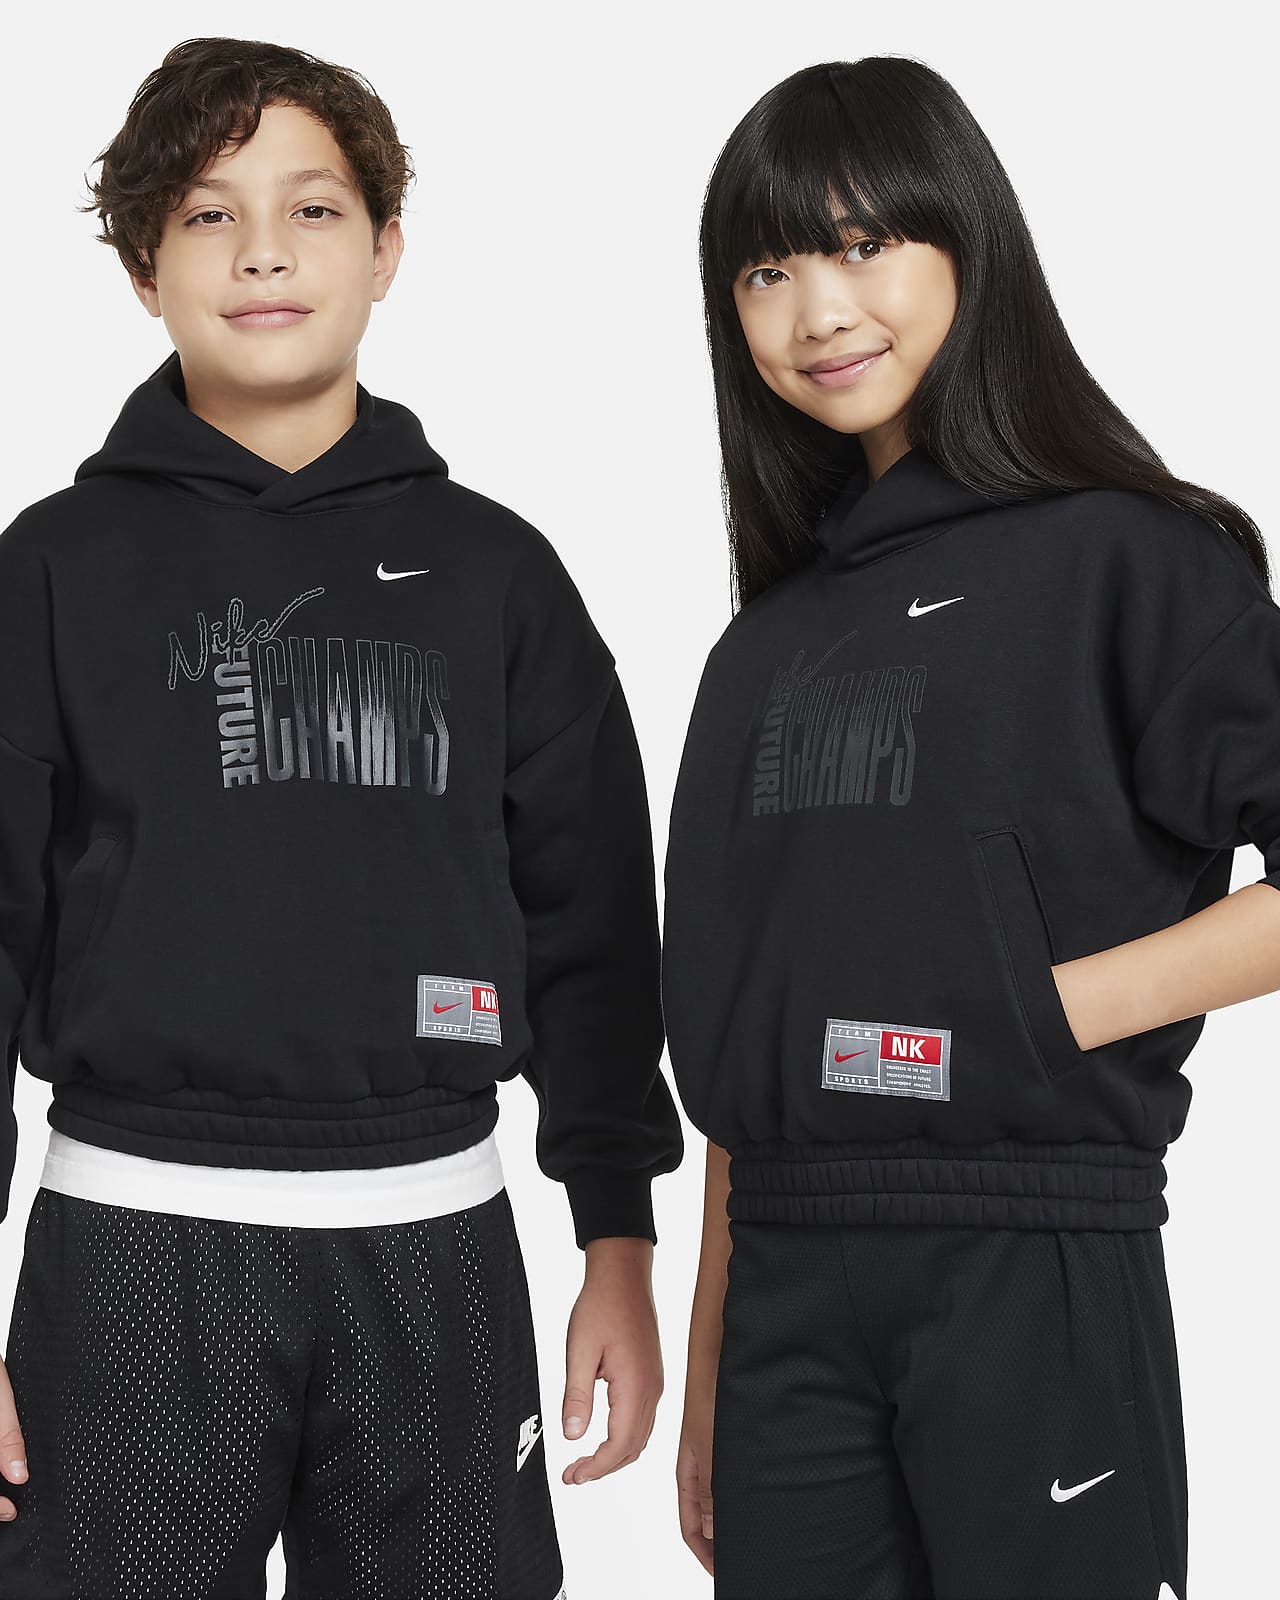 Nike Culture of Basketball fleecehettegenser til store barn